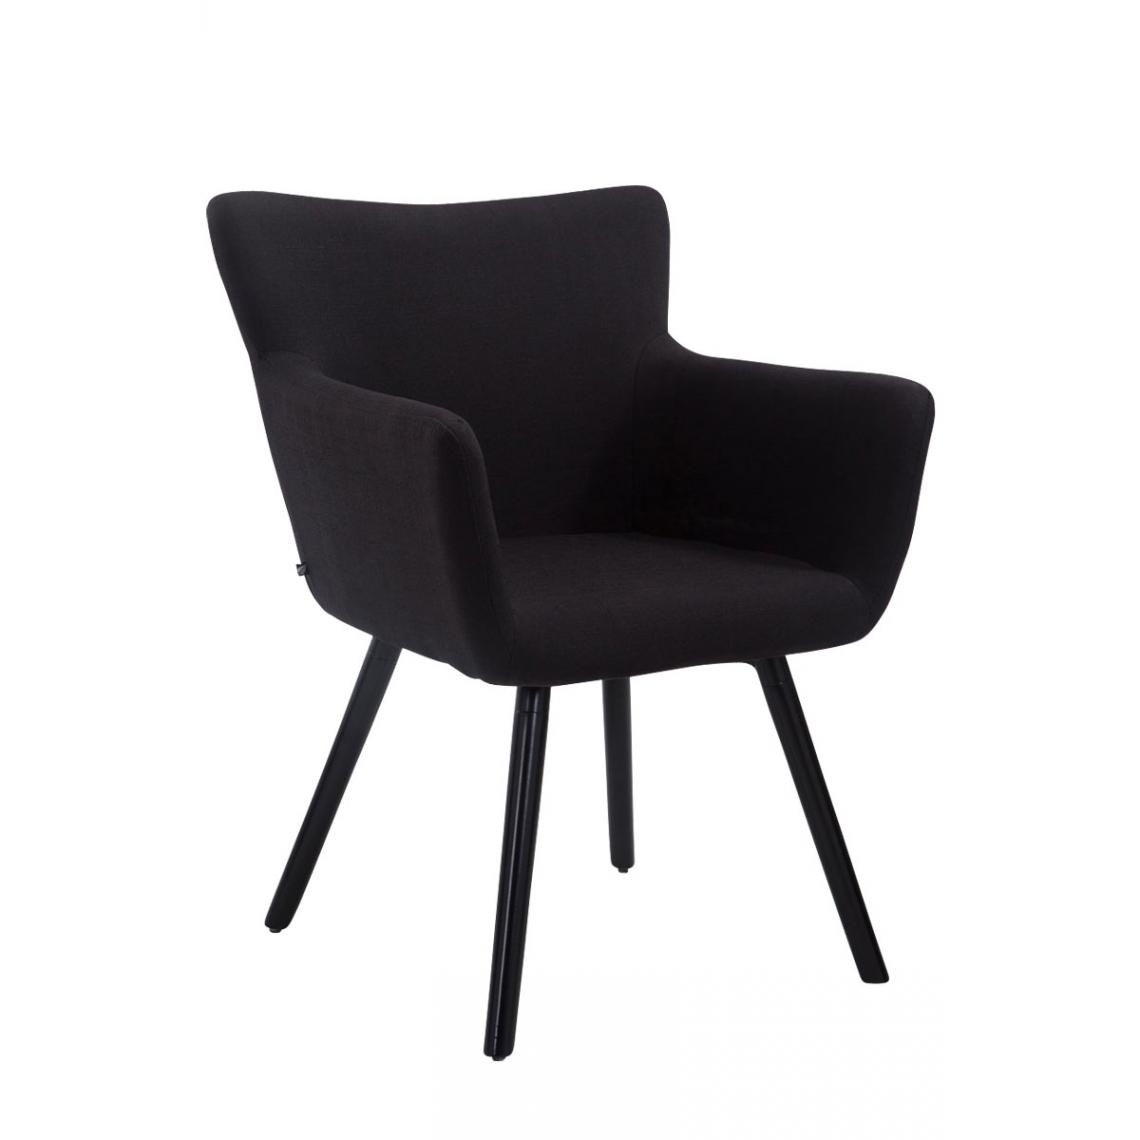 Icaverne - Moderne Chaise visiteur tissu categorie Bucarest noir (chêne) couleur noir - Chaises